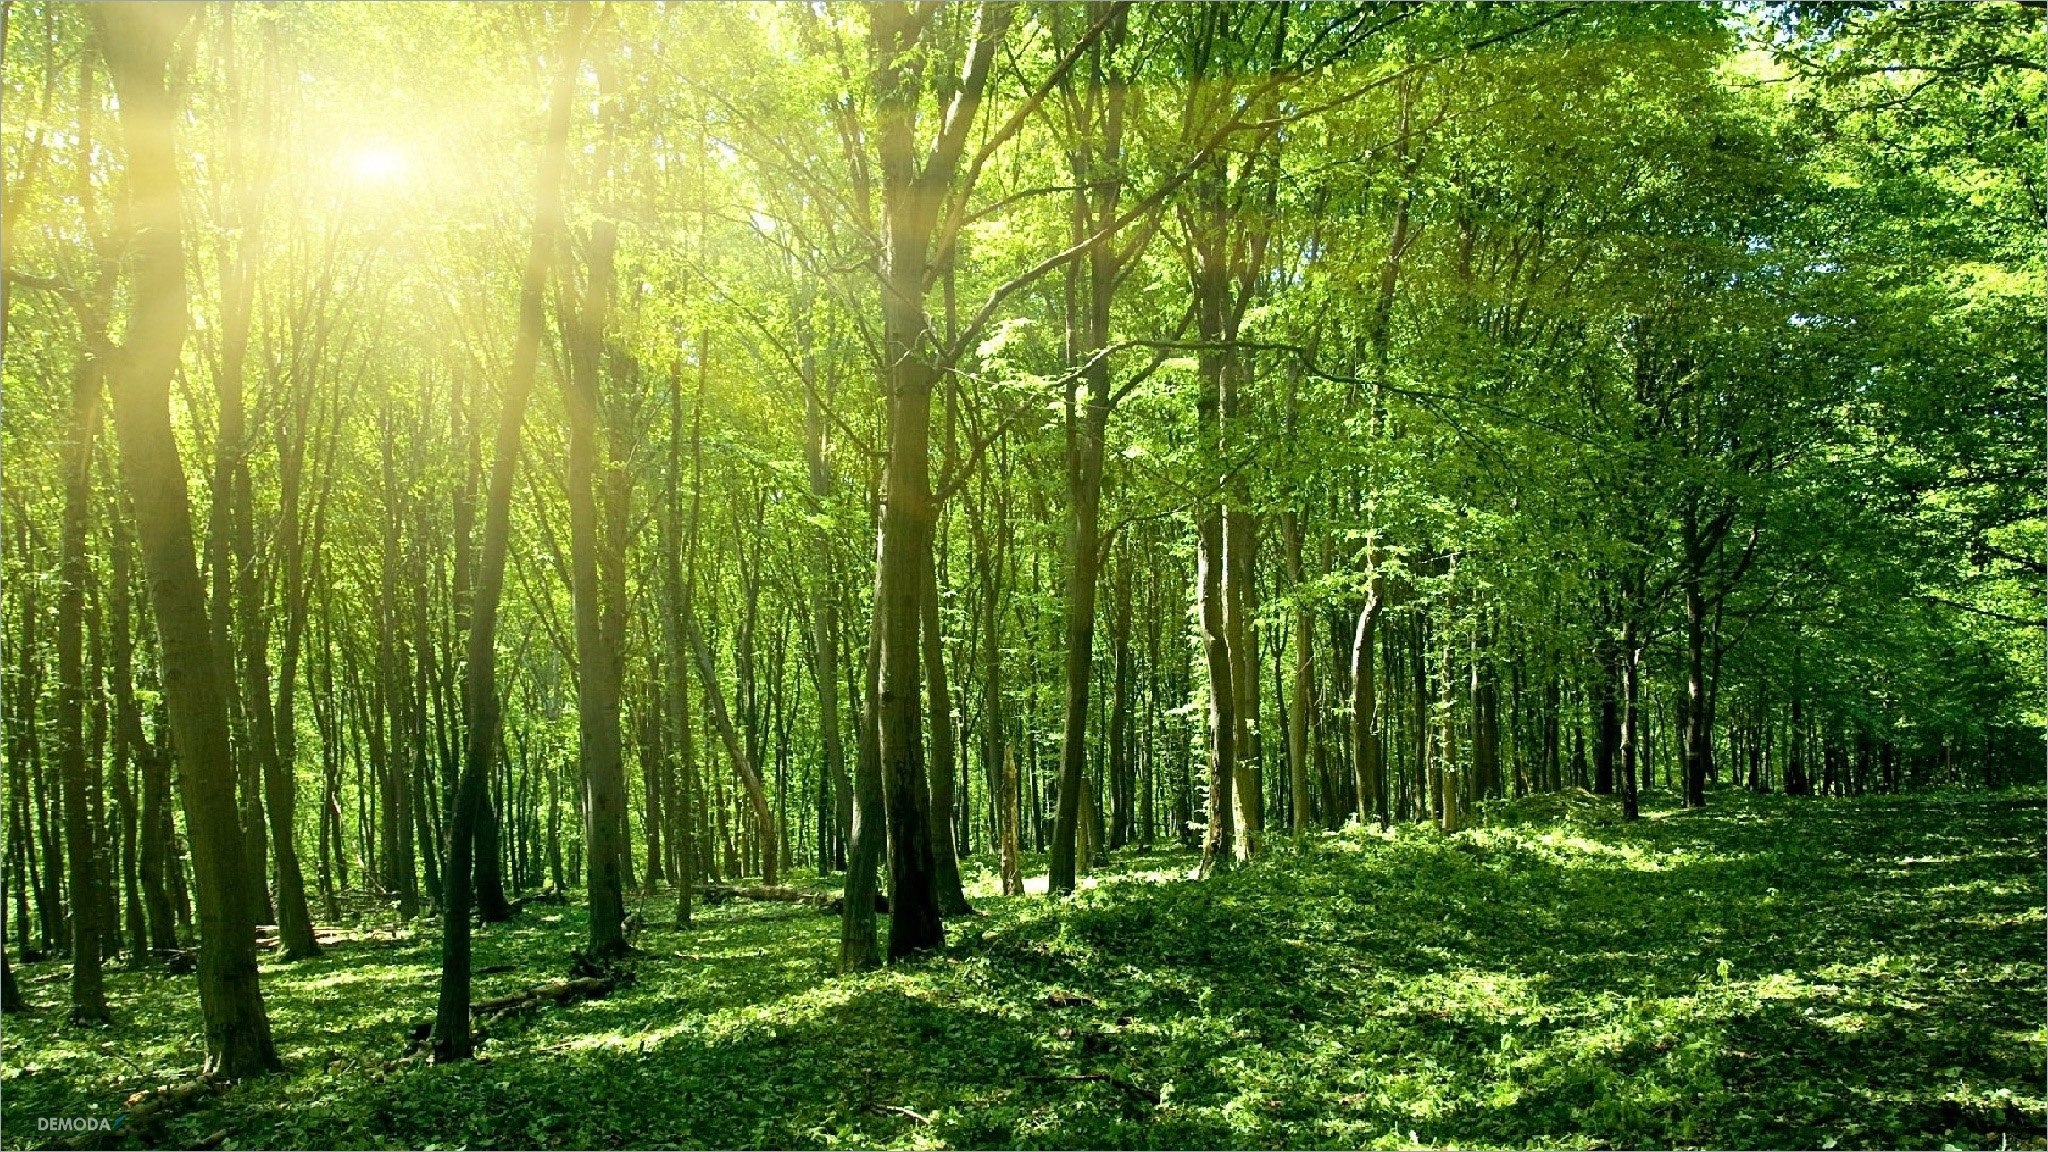 Ảnh Rừng Cây Xanh Thiên Nhiên: Cùng khám phá sự đa dạng trong cảnh quan thiên nhiên với những bức ảnh rừng xanh mát, những cành cây được bao phủ xung quanh. Tại đây, bạn sẽ được chiêm ngưỡng cảnh quan thiên nhiên tuyệt đẹp với đủ loại cây xanh tươi mát, cỏ dại nở rộ, tạo nên một không gian yên bình và thanh thản.